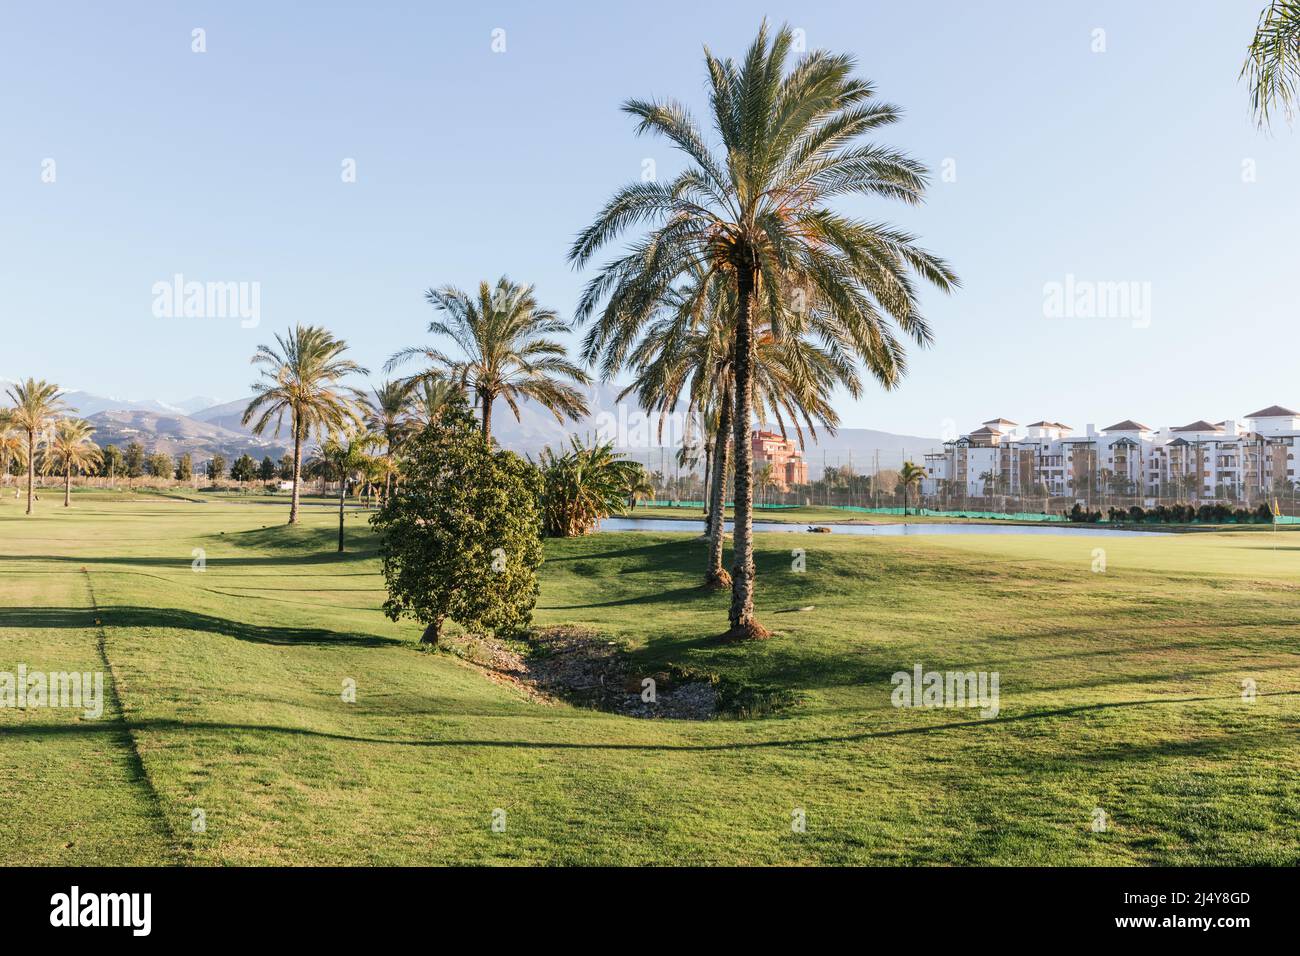 Tramonto nella lussuosa località balneare con campo da golf a Motril, nel sud della Spagna, Foto Stock